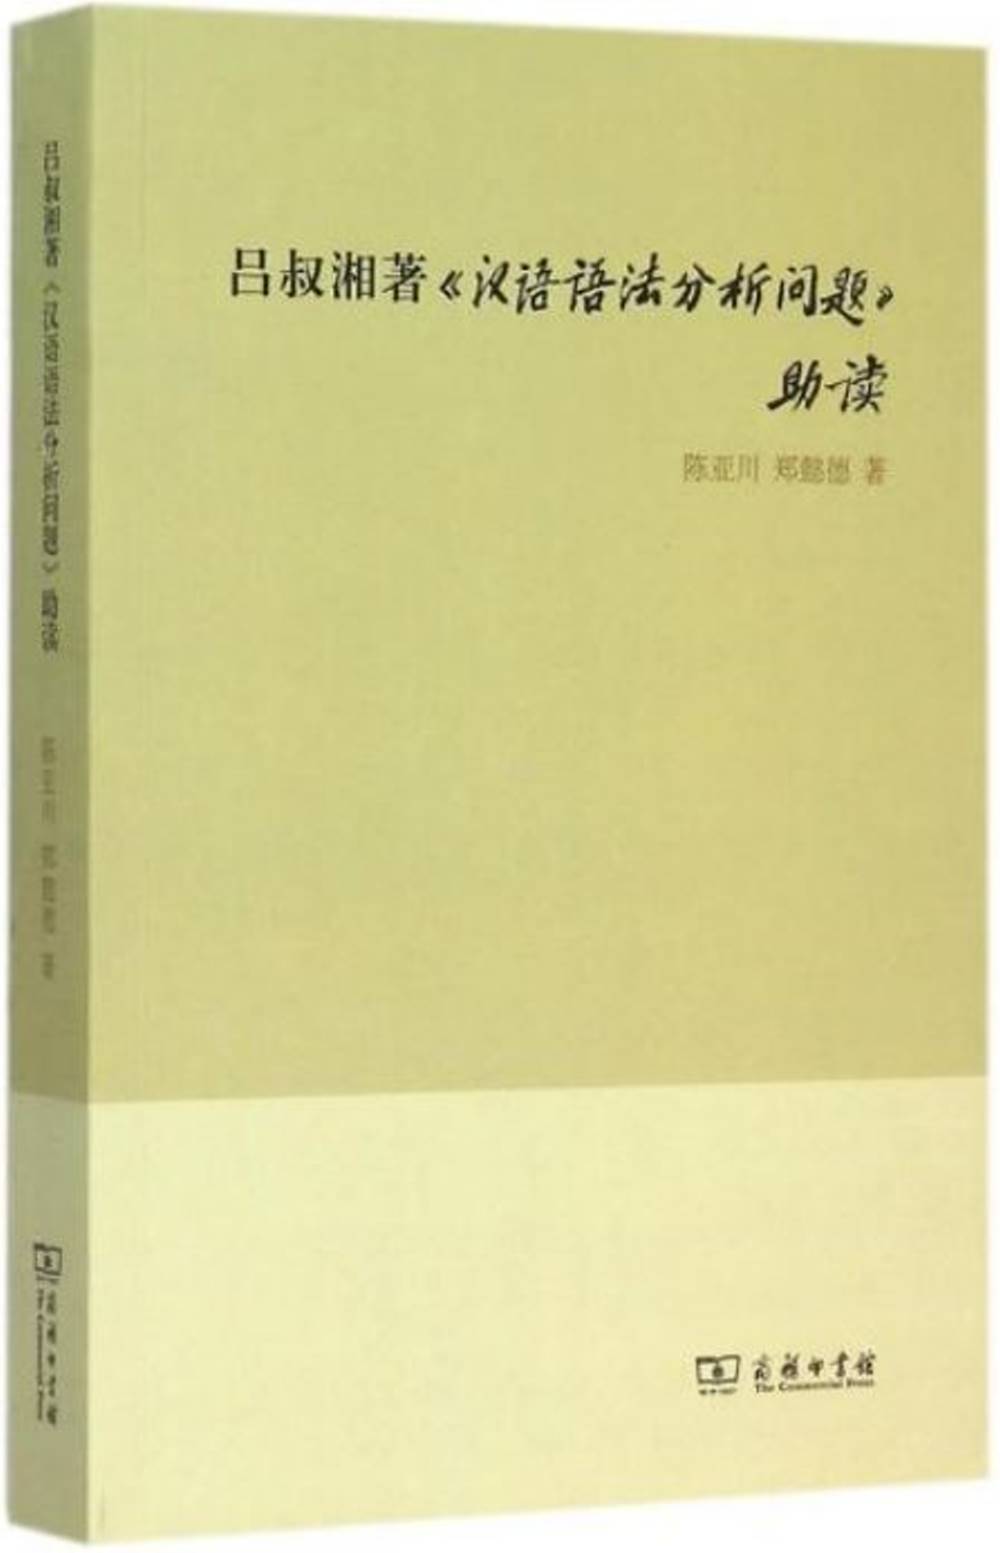 呂叔湘著《漢語語法分析問題》助讀